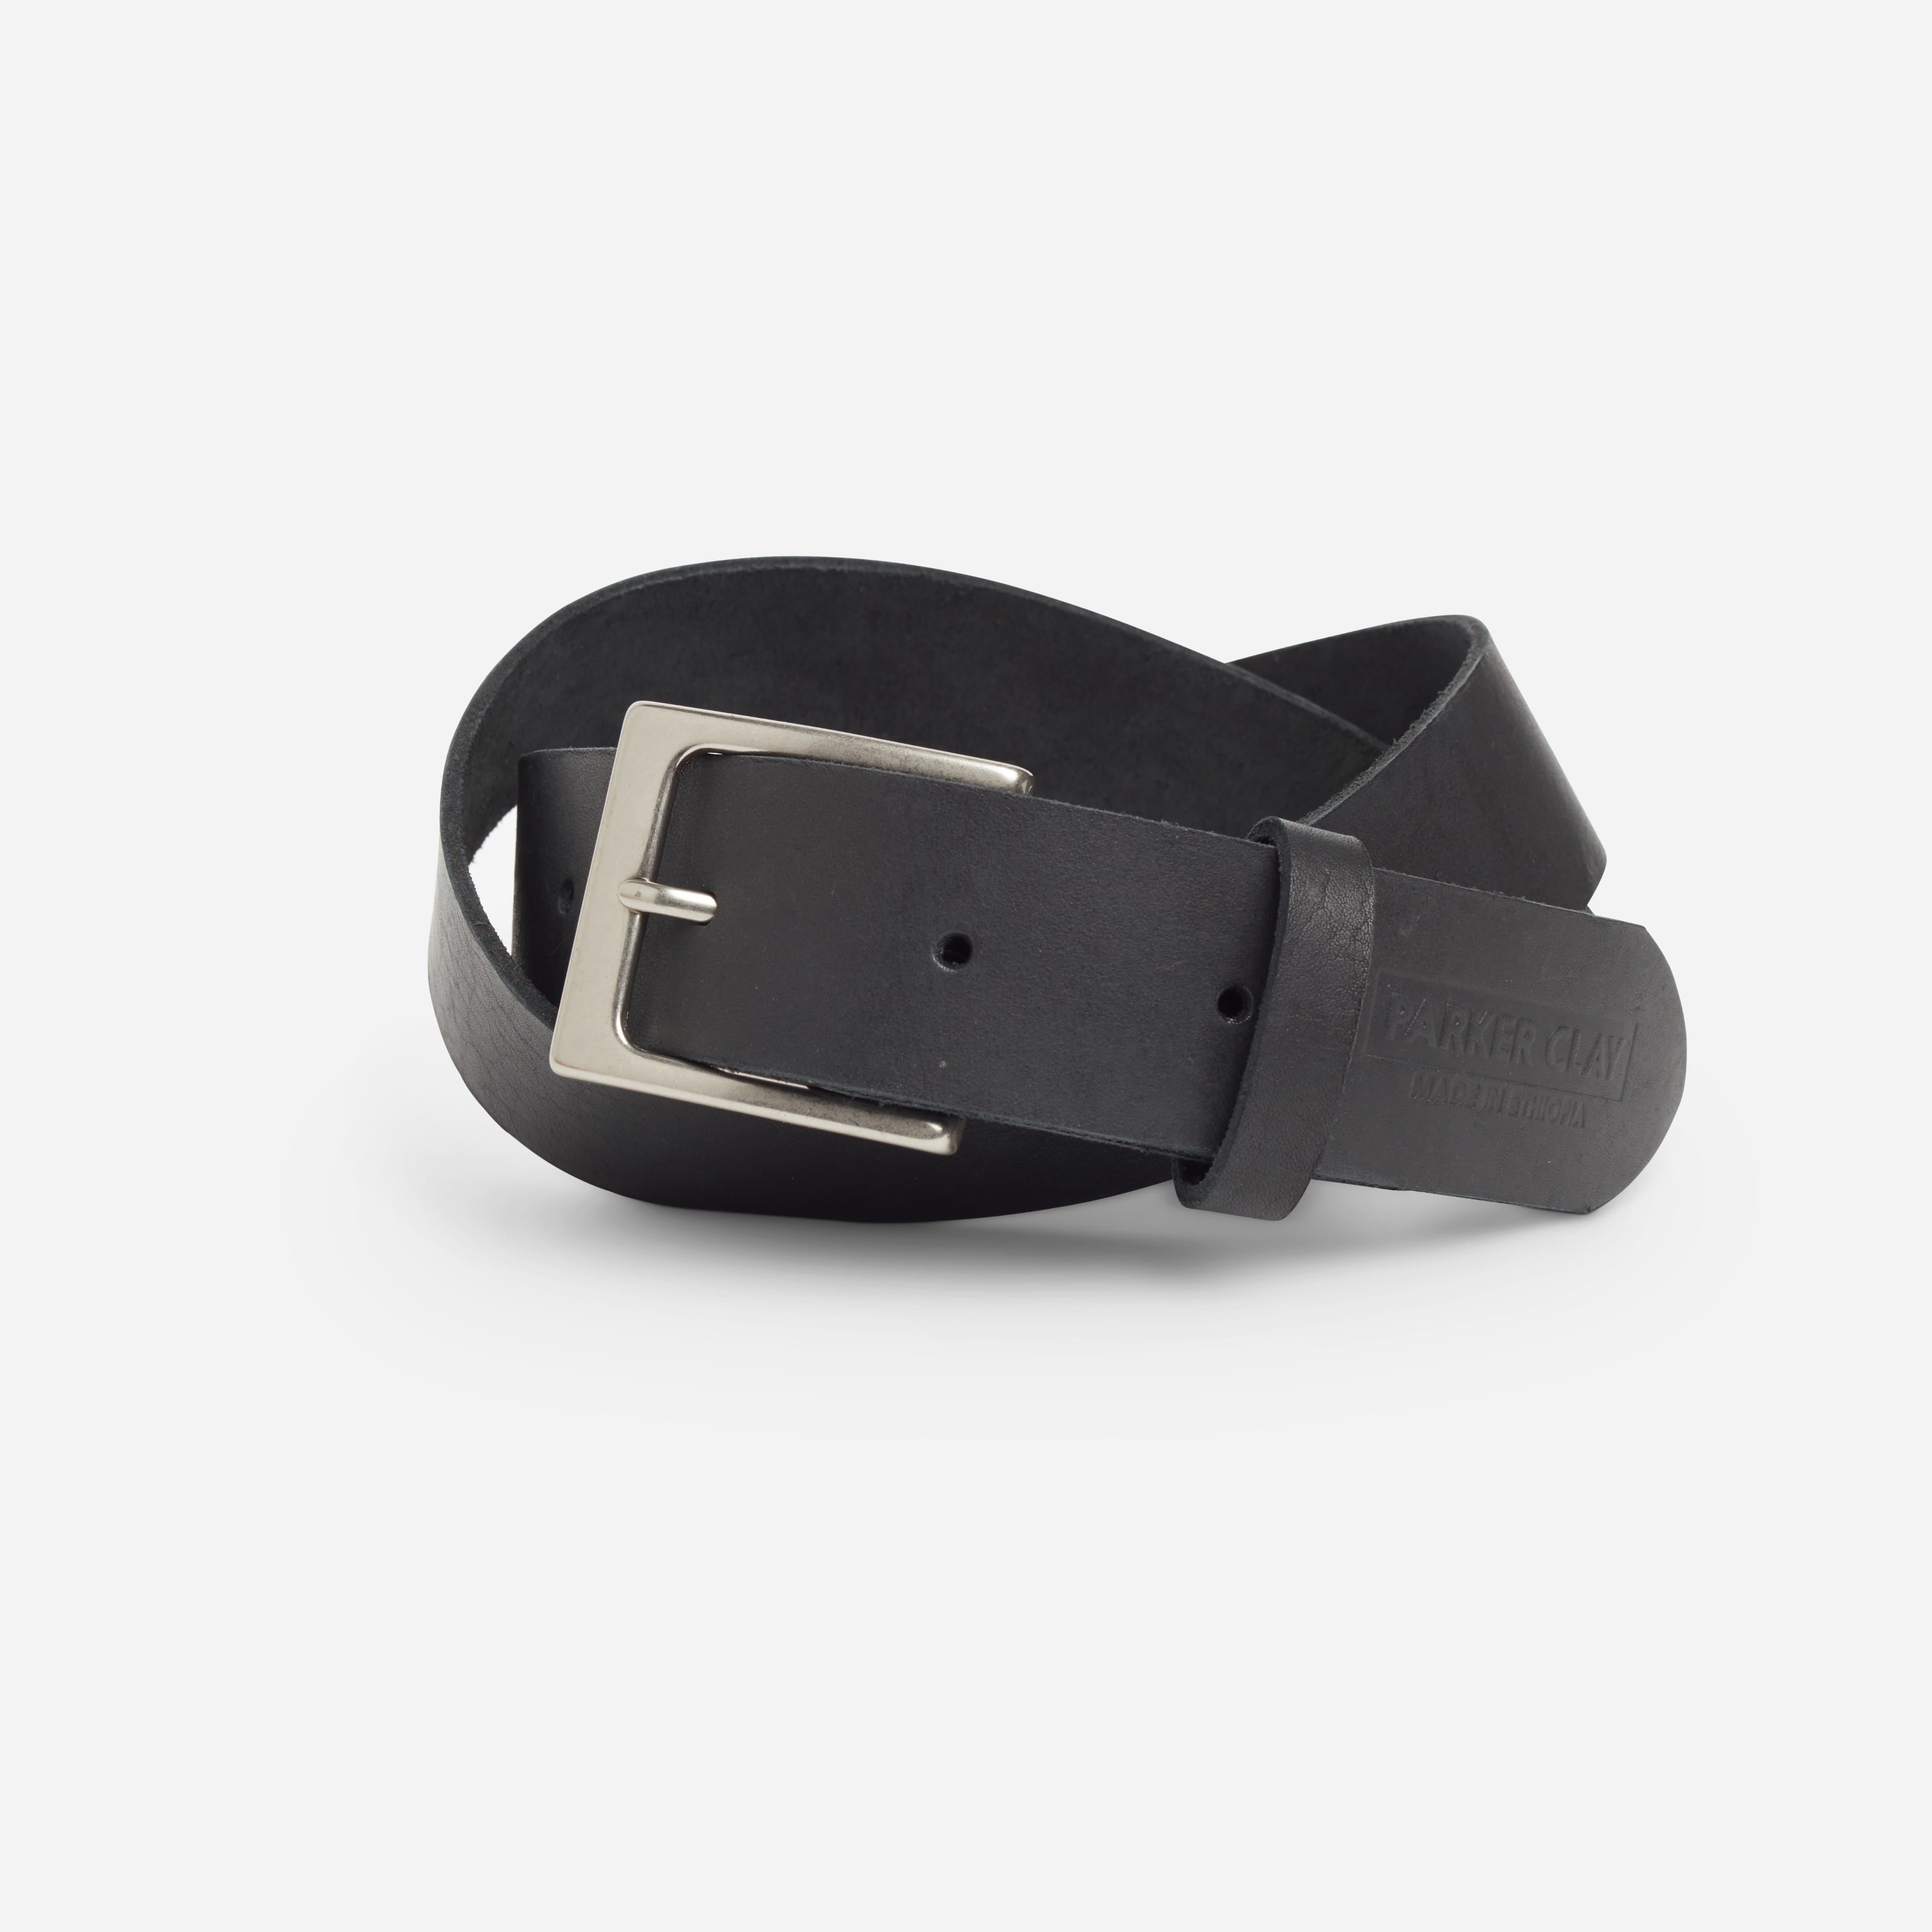 Mekonnen Leather Belt - Parker Clay 